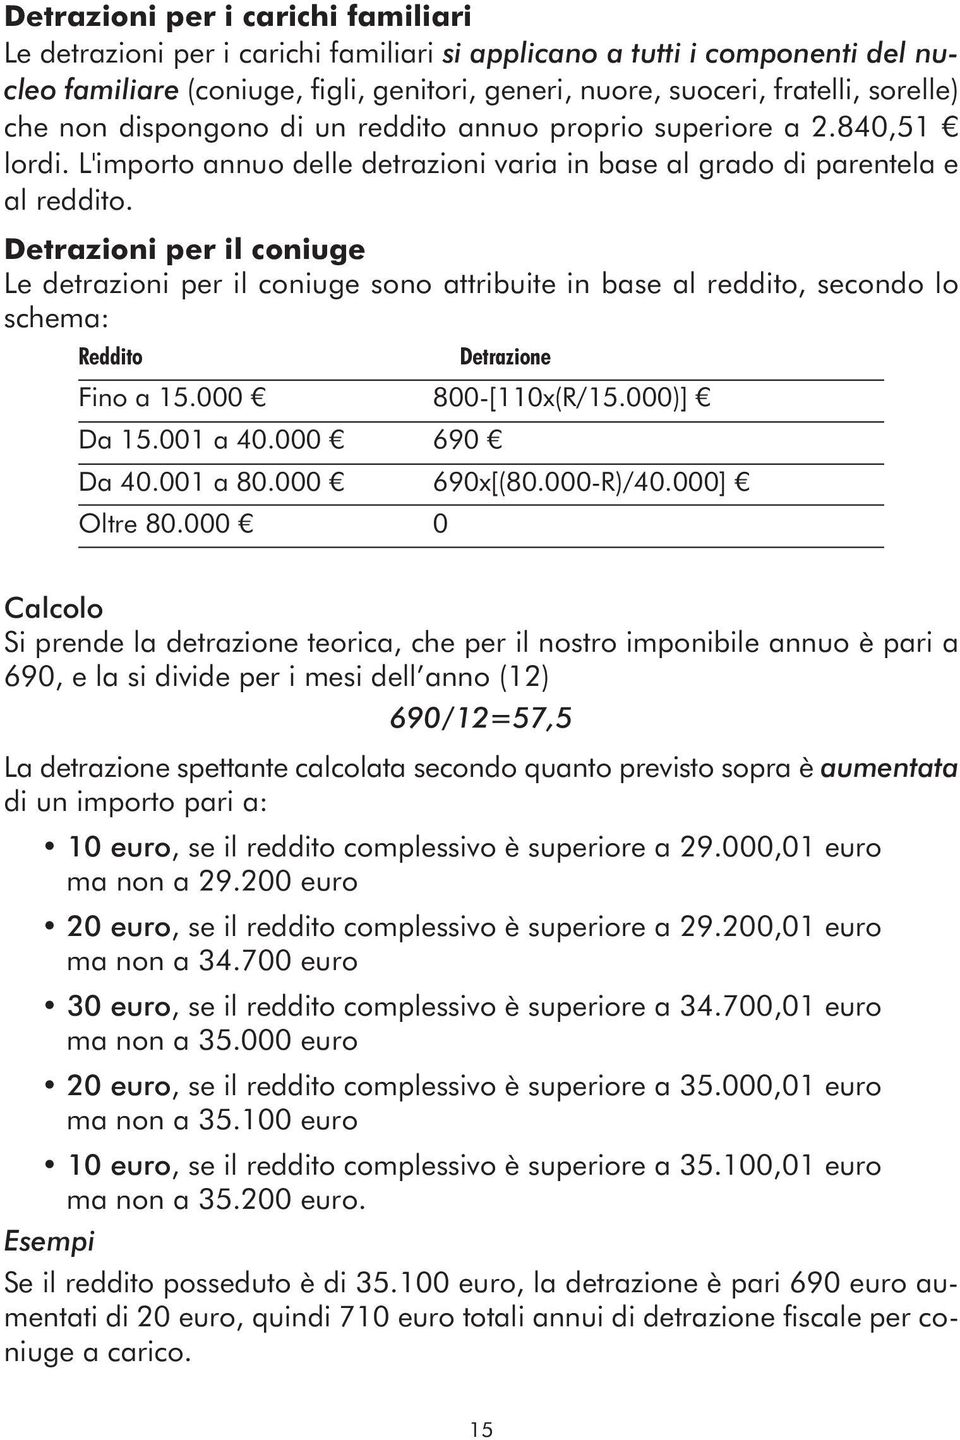 Detrazioni per il coniuge Le detrazioni per il coniuge sono attribuite in base al reddito, secondo lo schema: Reddito Detrazione Fino a 15.000 800-[110x(R/15.000)] Da 15.001 a 40.000 690 Da 40.